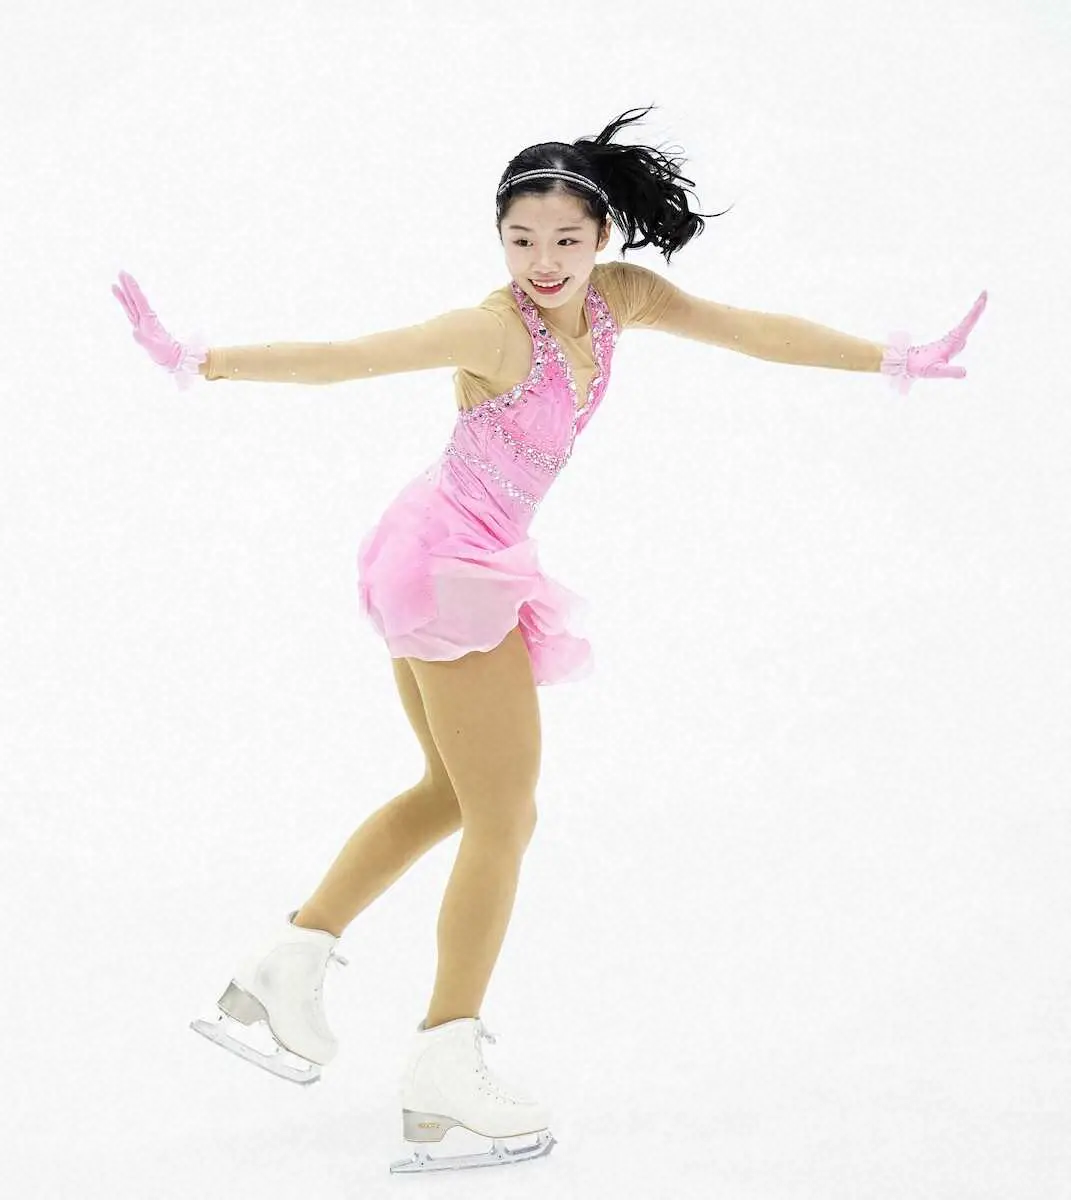 中井亜美は65・97点で4位発進　笑顔で滑りきり「今日は楽しみが大きかった」